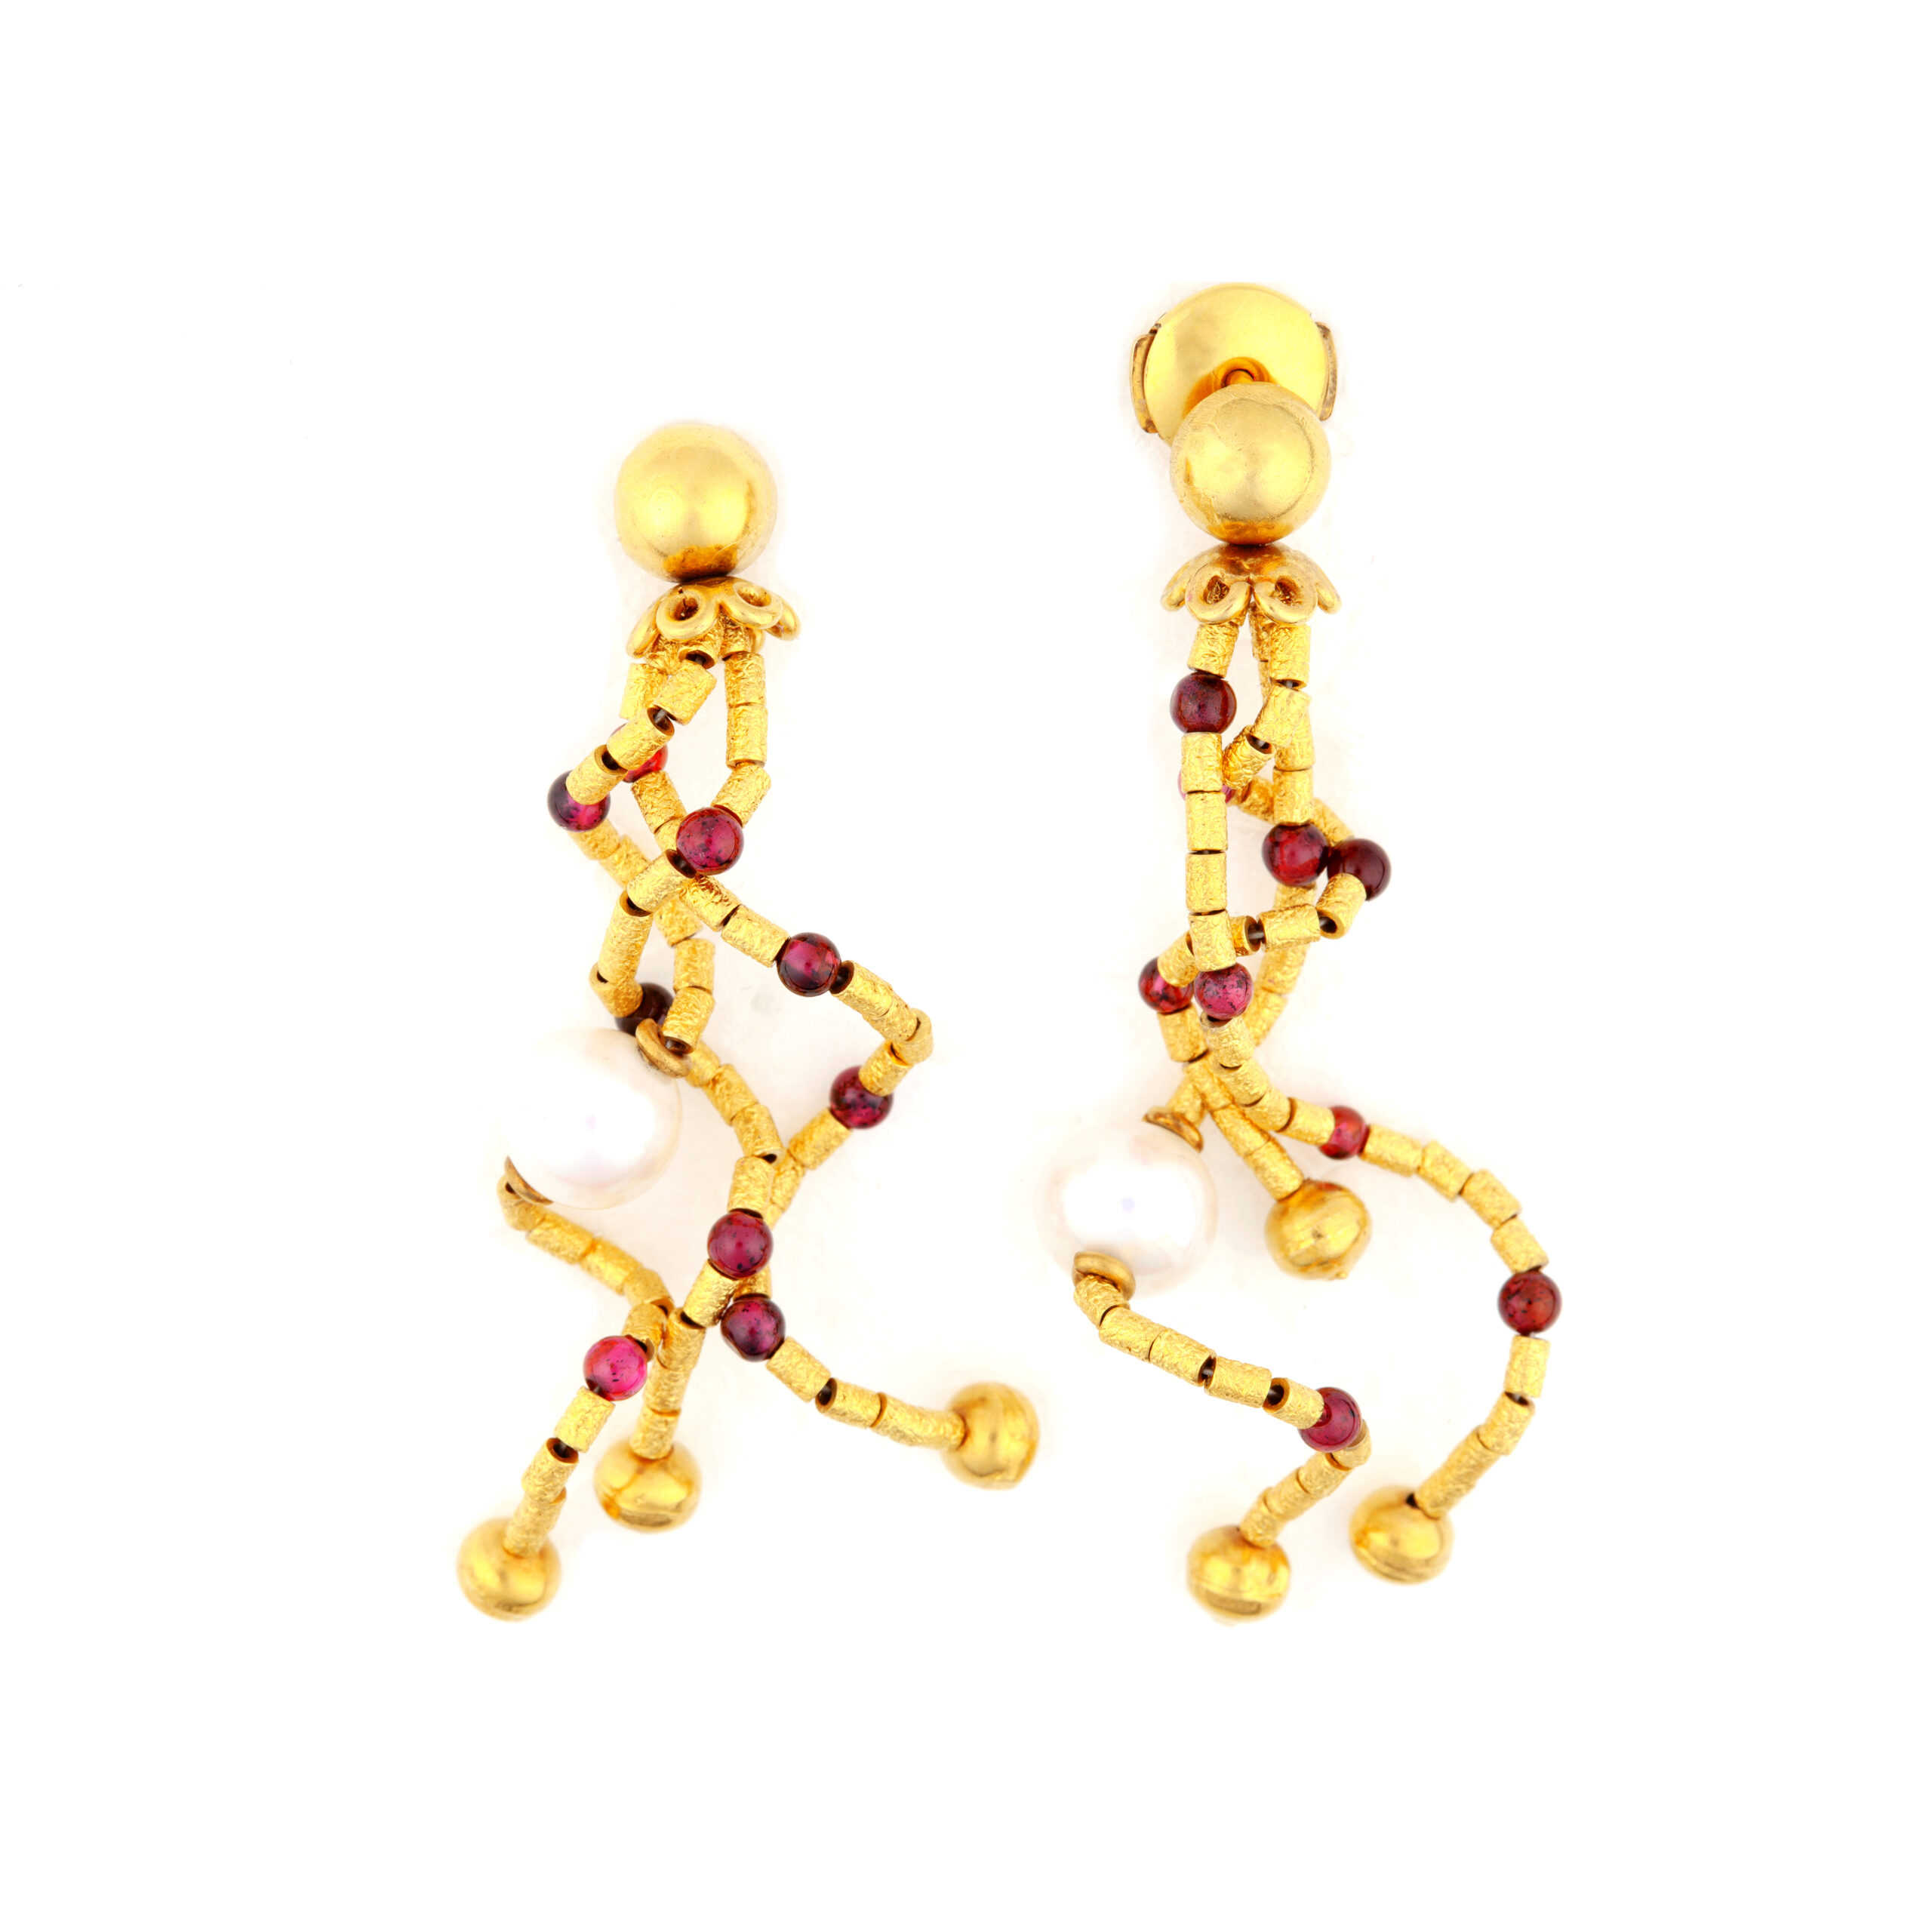 Κρεμαστά σκουλαρίκια από κίτρινο χρυσό Κ18 με σαγρέ φινίρισμα, κόκκινους σφαιρικούς γρανάτες και λευκά μαργαριτάρια